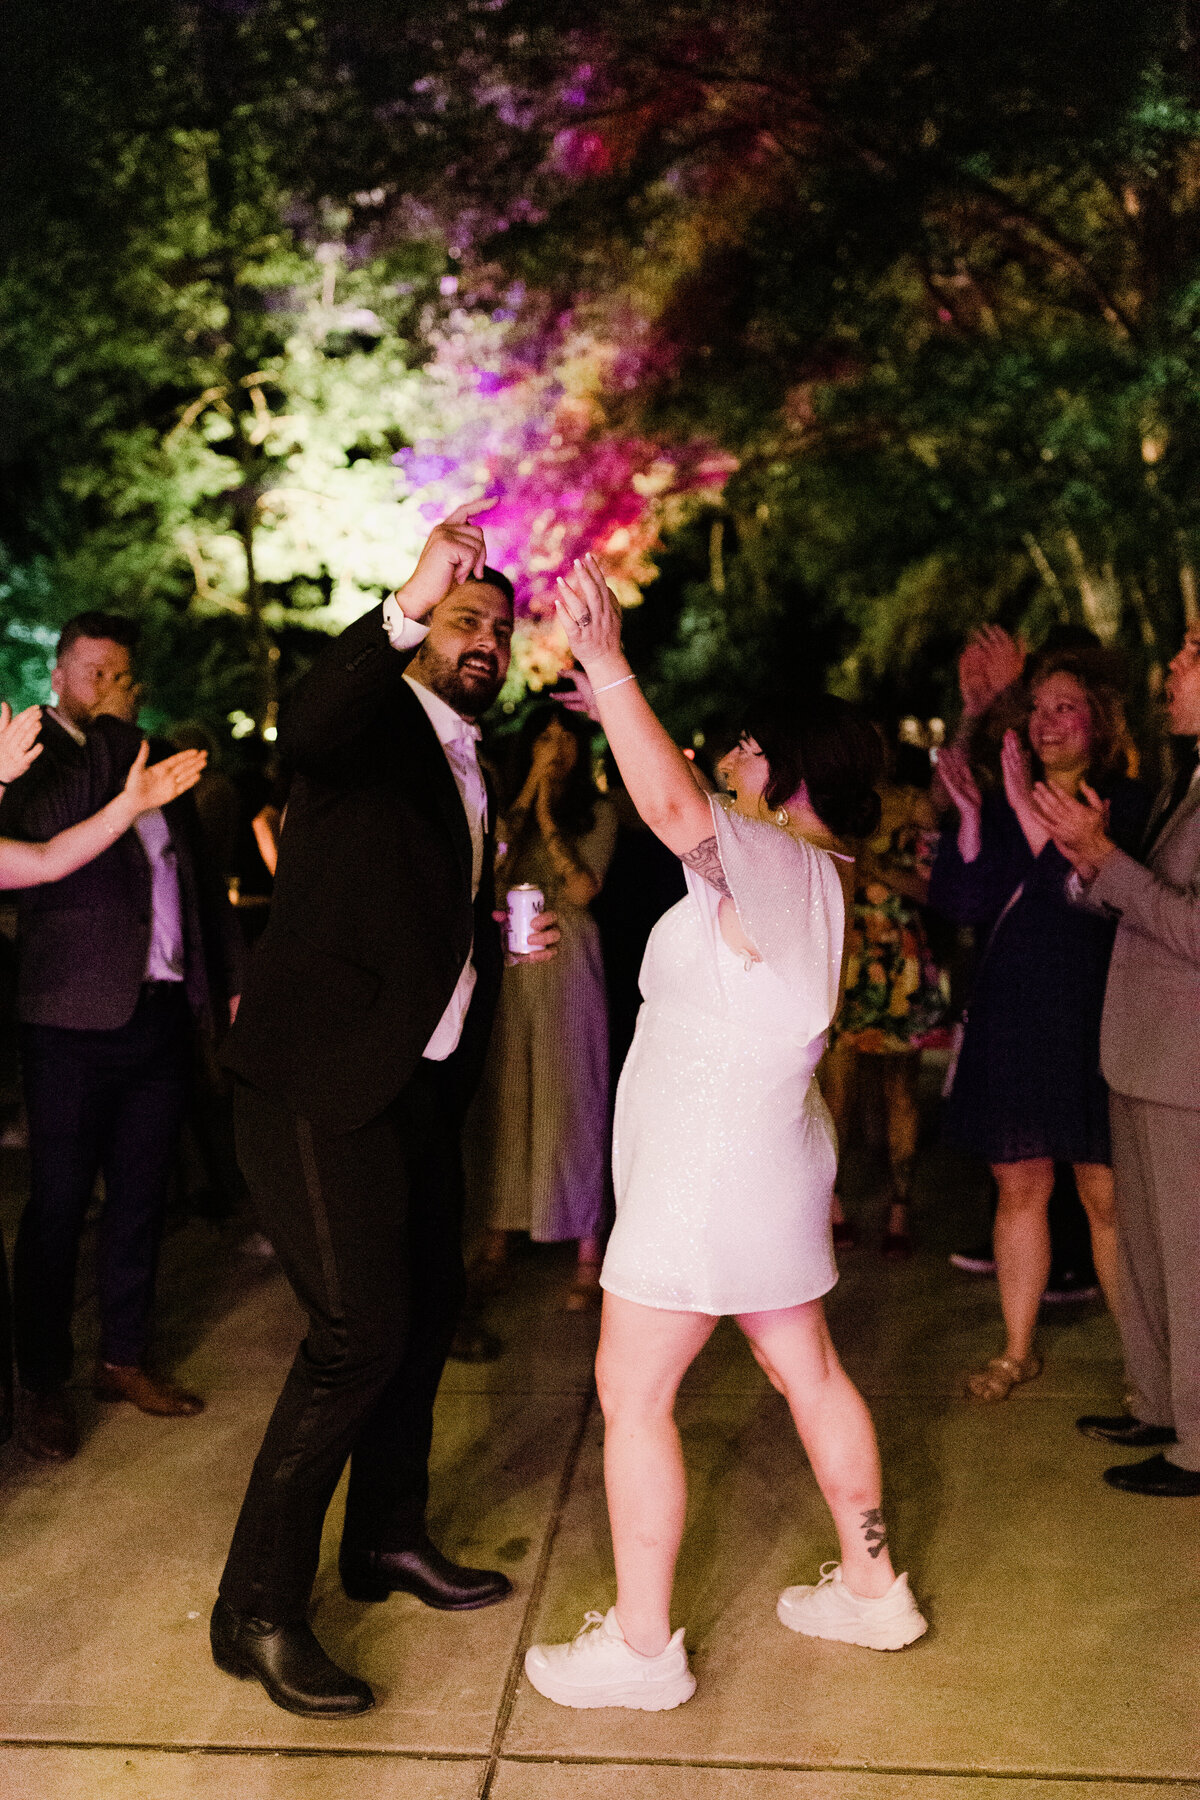 Bride in short white dress dancing at wedding reception with groom at Umlauf Sculpture Garden, Austin